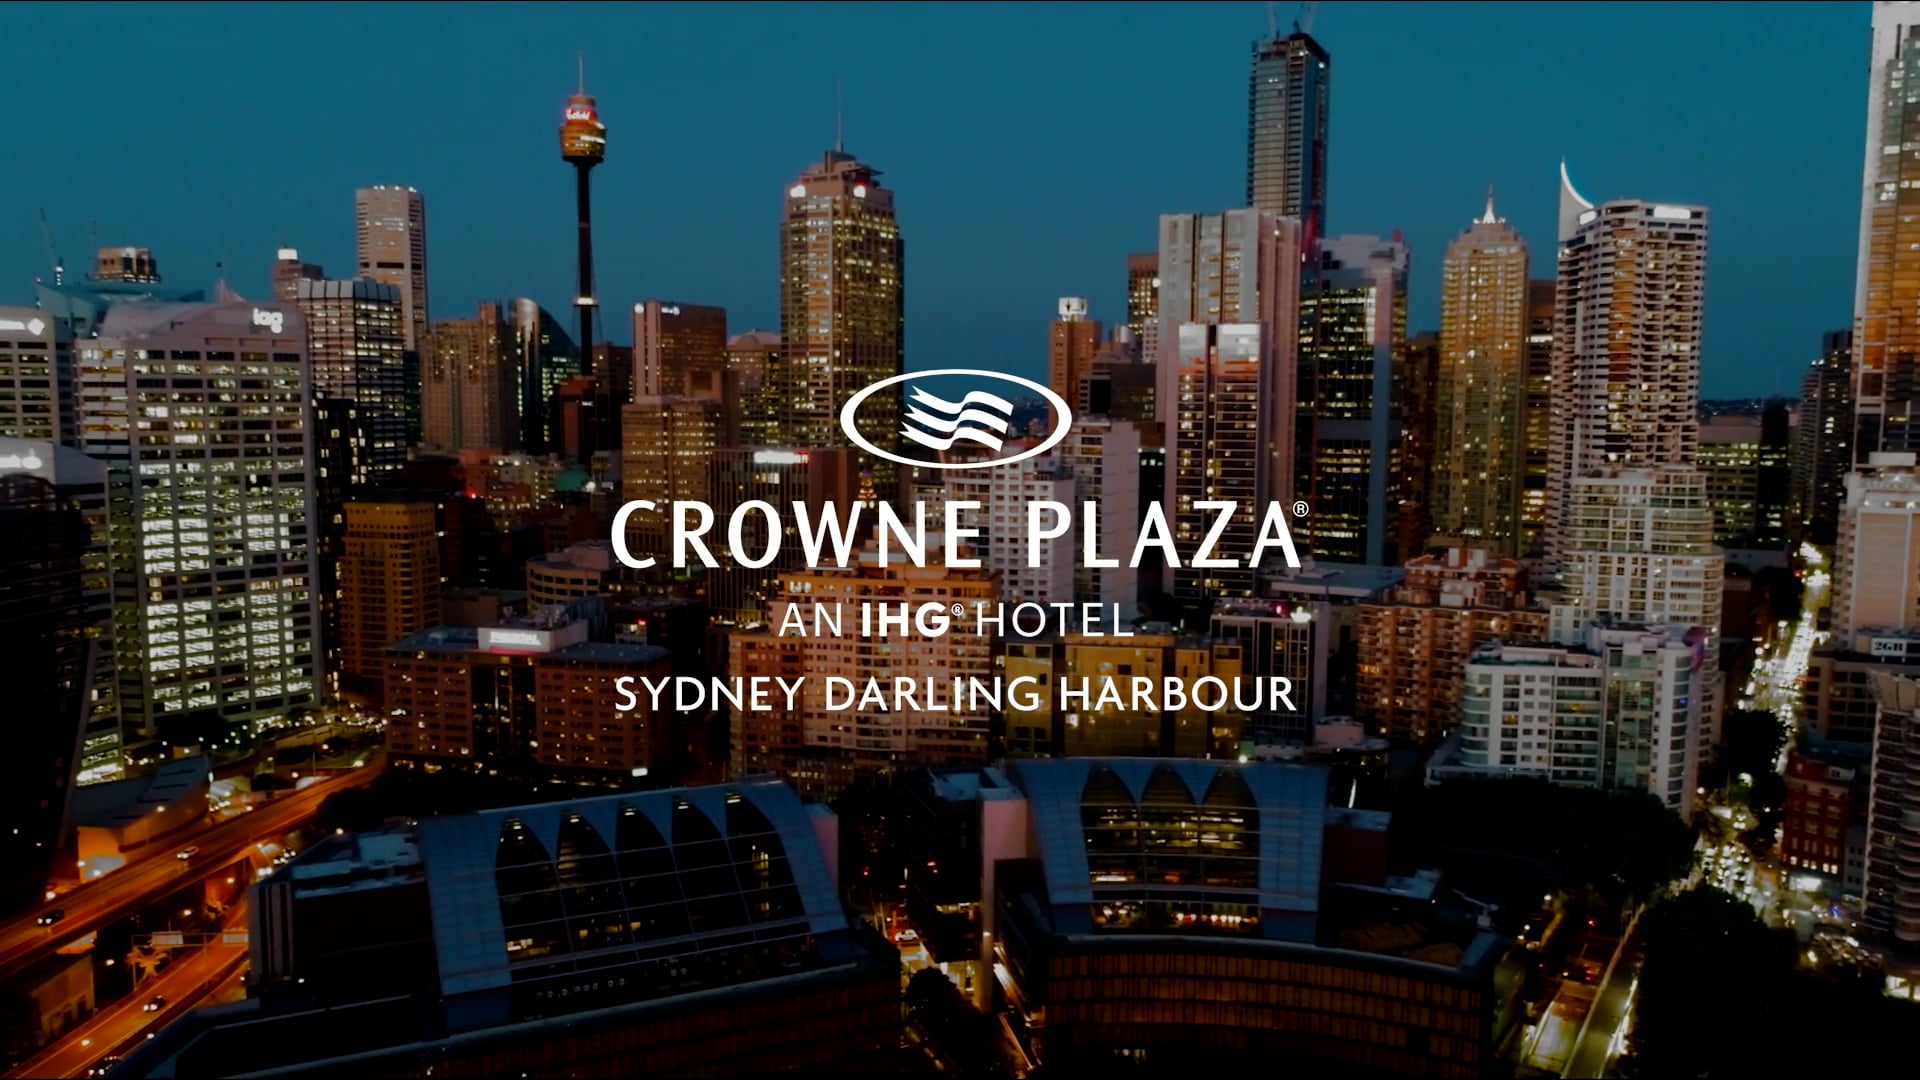 Crowne Plaza Darling Harbour SYDNEY - 60 sec